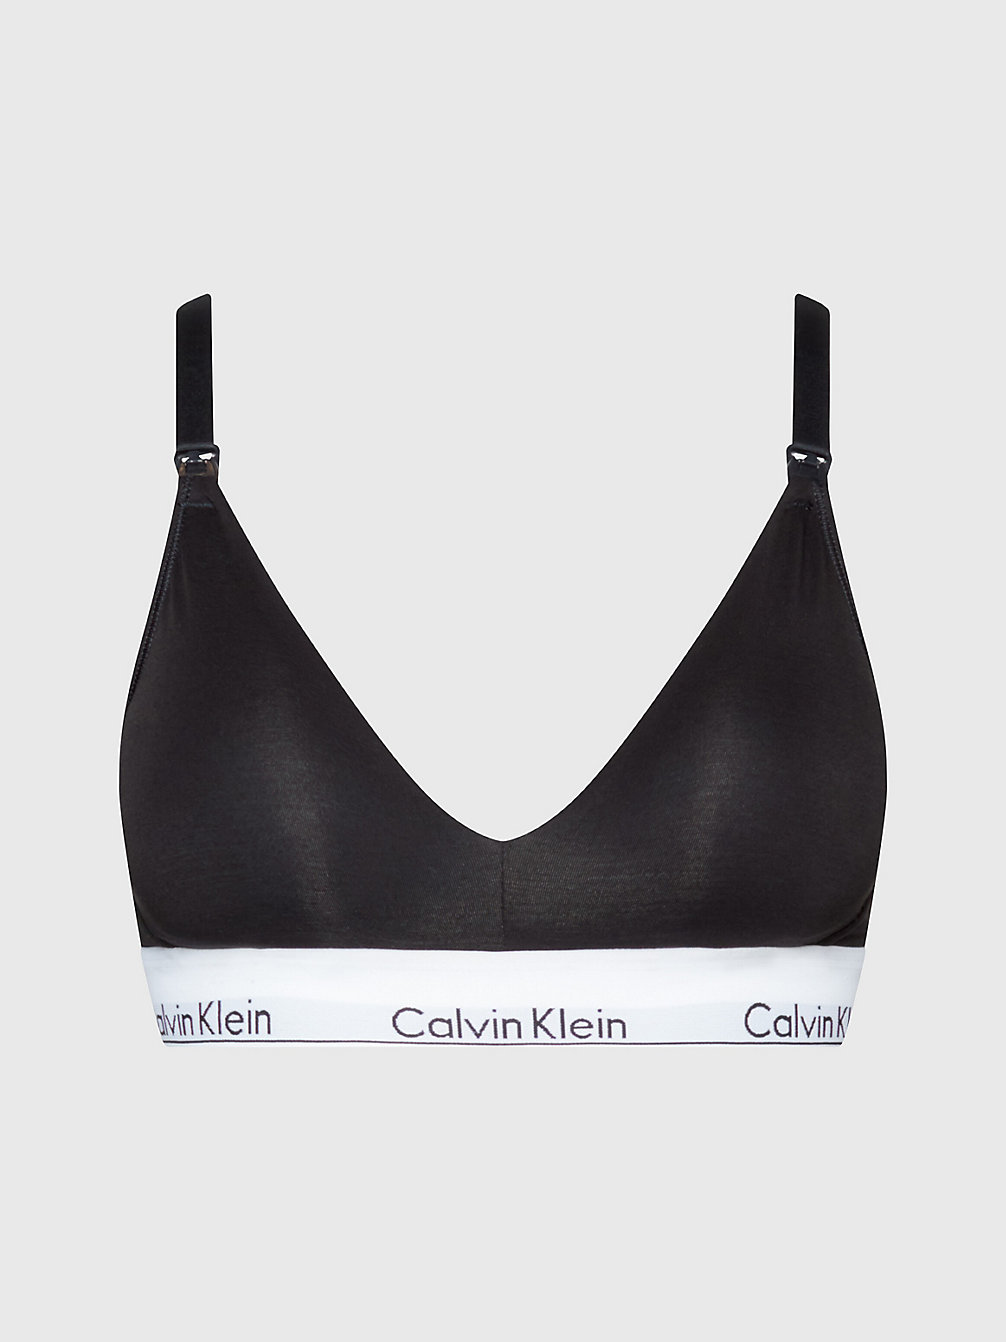 Bras for Women | Sexy Essentials | Calvin Klein®